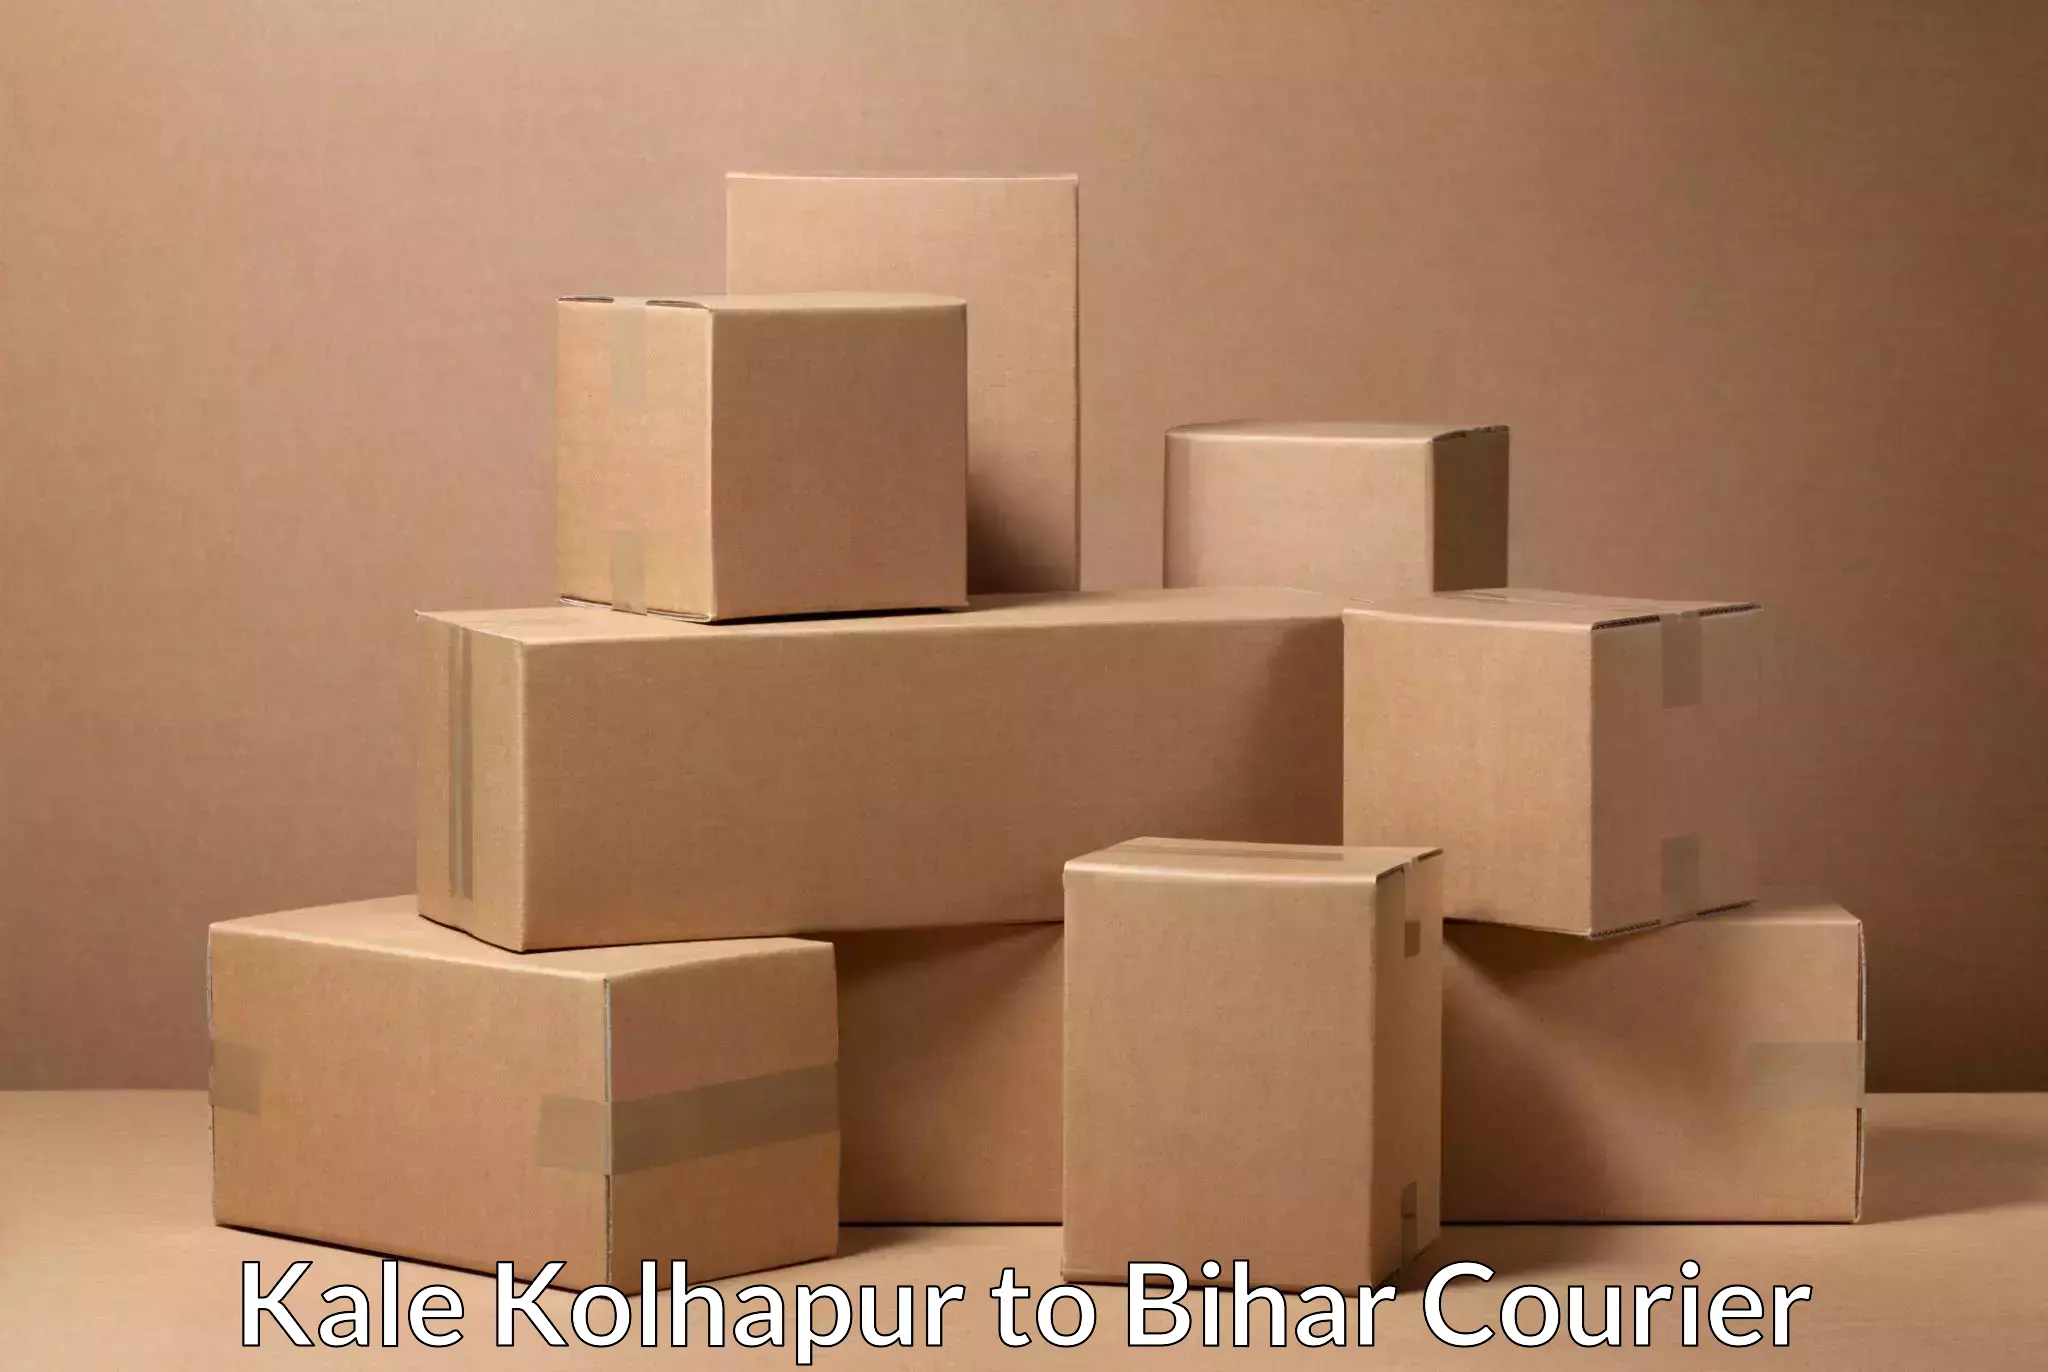 Efficient parcel service in Kale Kolhapur to Brahmapur